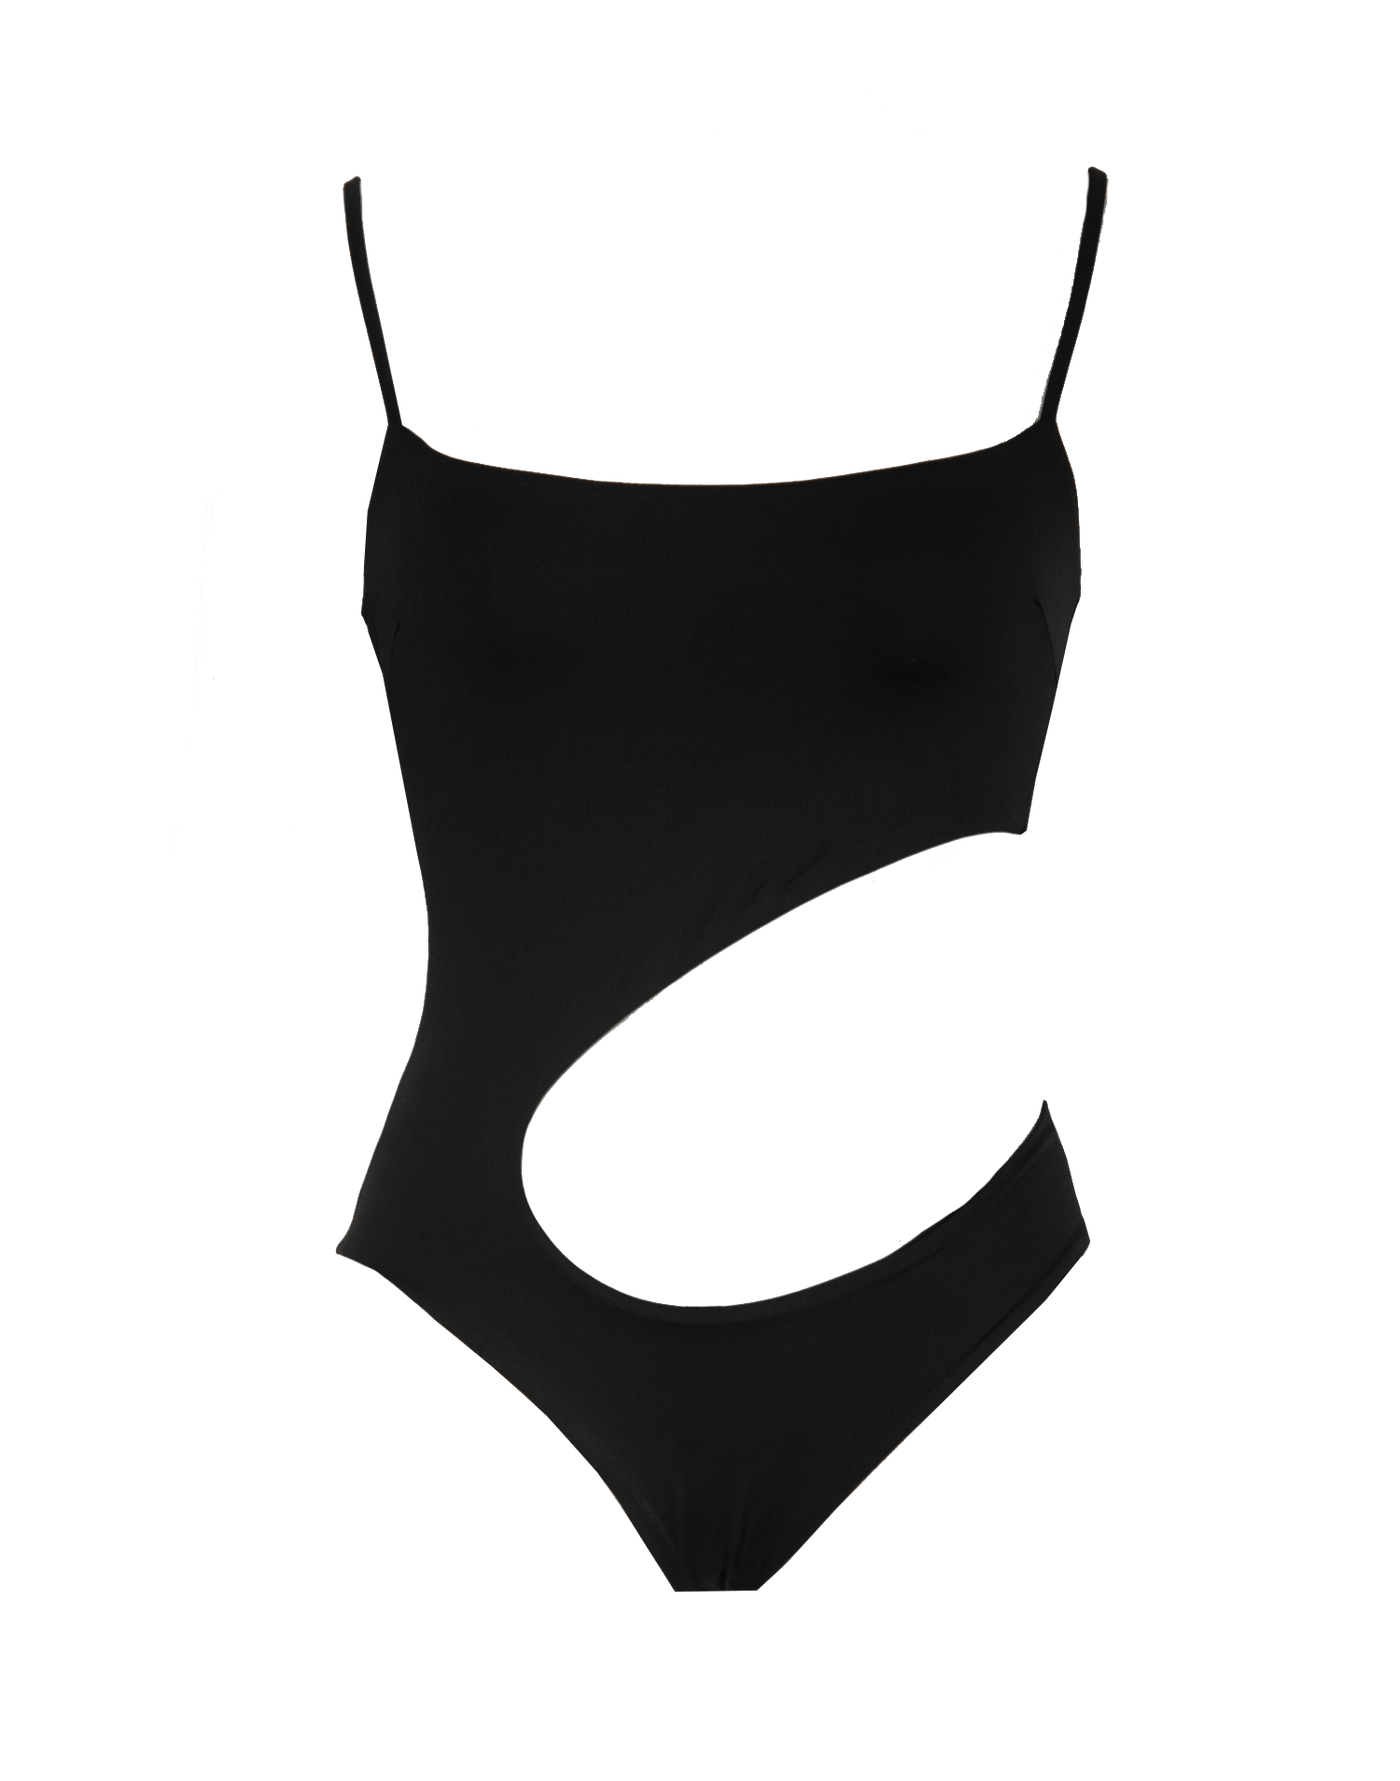 Dominion Bodysuit (Black) - Black Cut Out Bodysuit - Women's Top - Charcoal Clothing